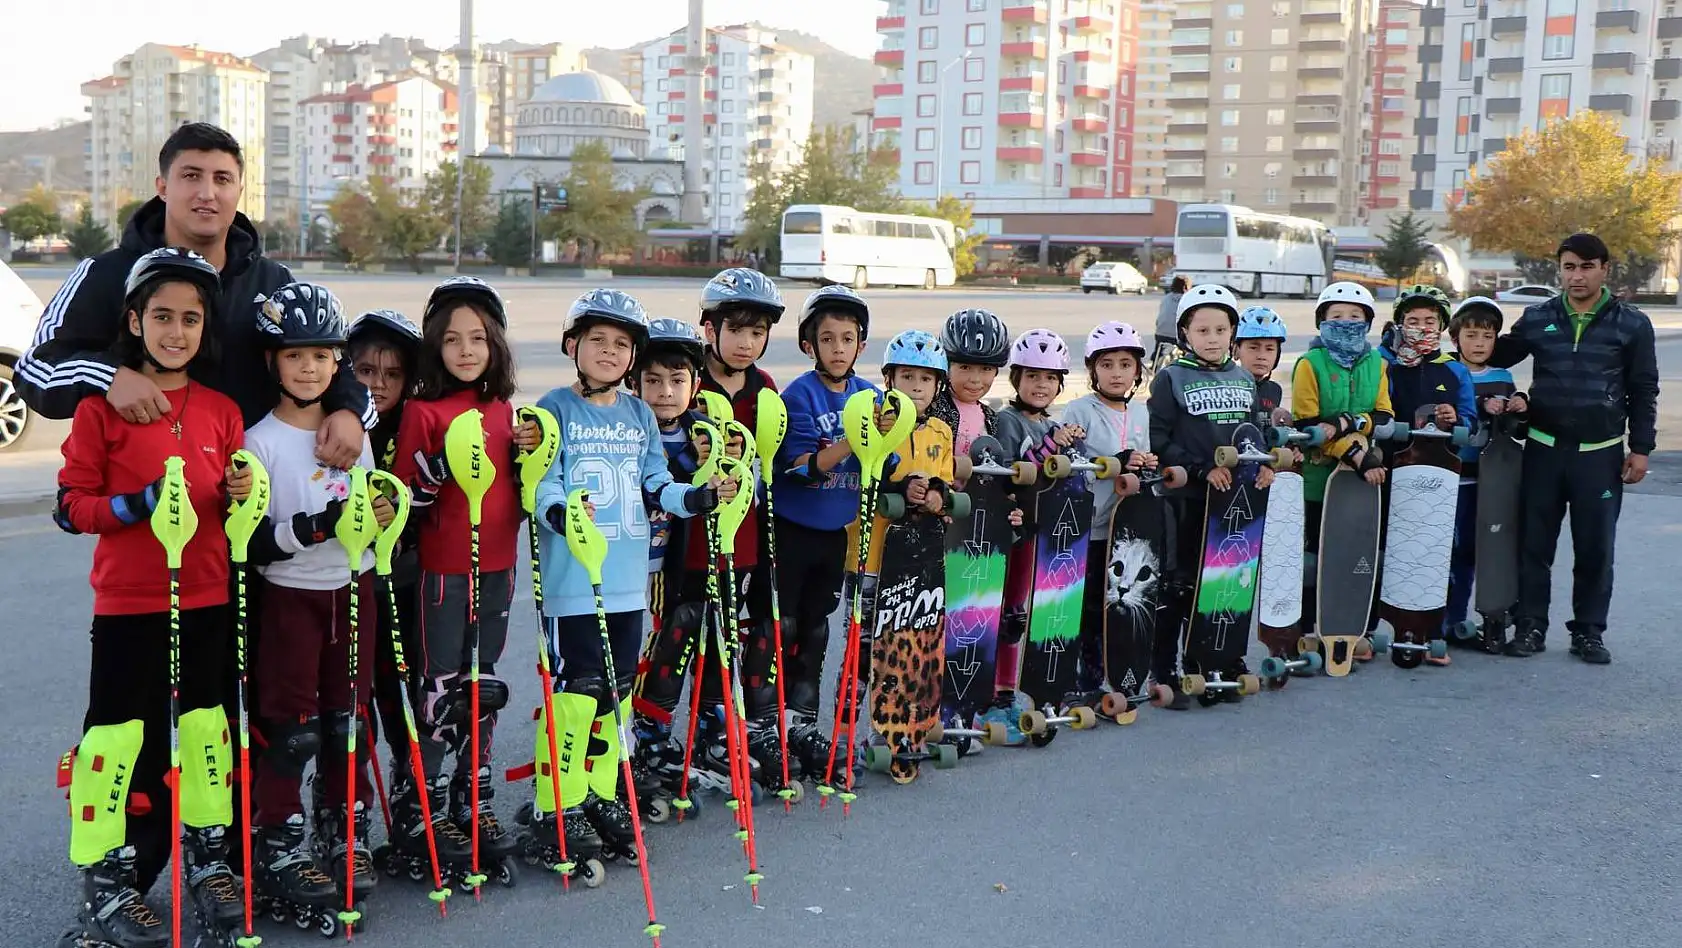 Asfaltta 'kayak' eğitimi